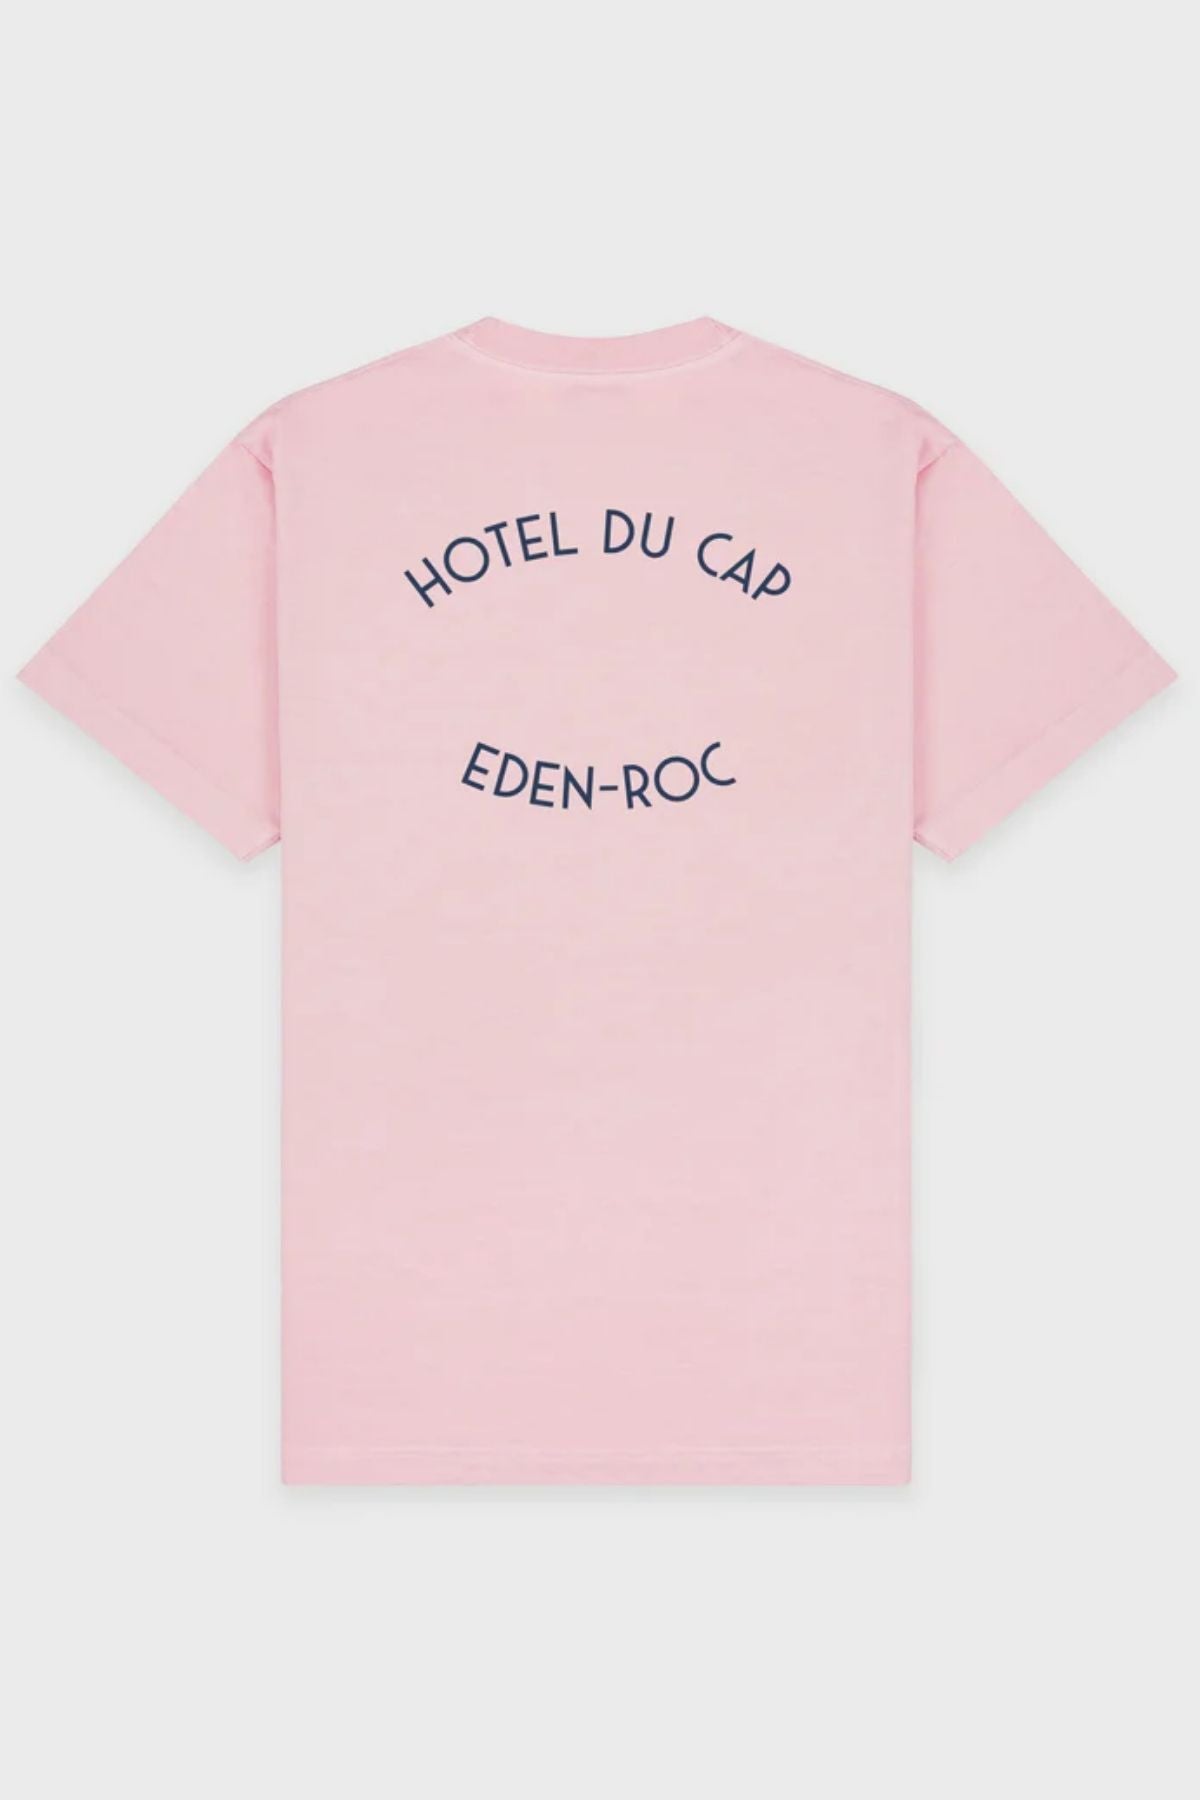 Sporty & Rich Hotel du Cap T-Shirt - Eden Pink/ Navy